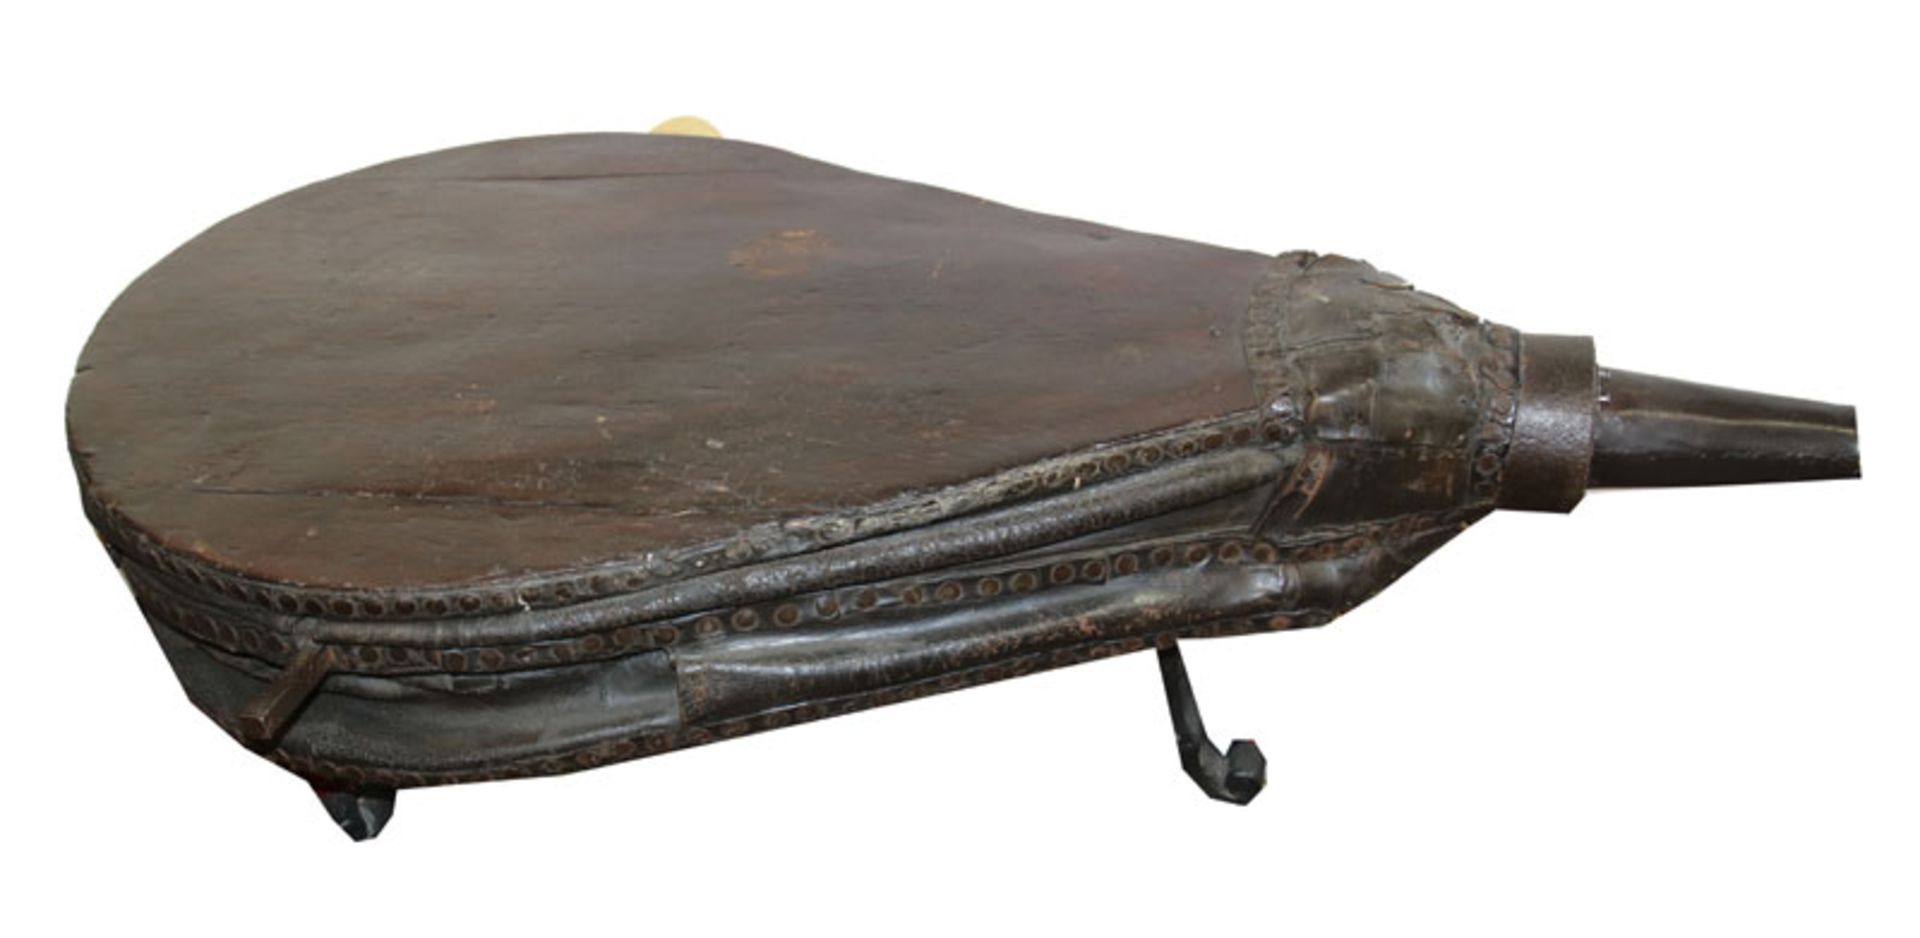 Großer Blasebalg aus einer Schmiede, 19. Jahrhundert, H 53 cm, L 158 cm, B 100 cm, Alters- und